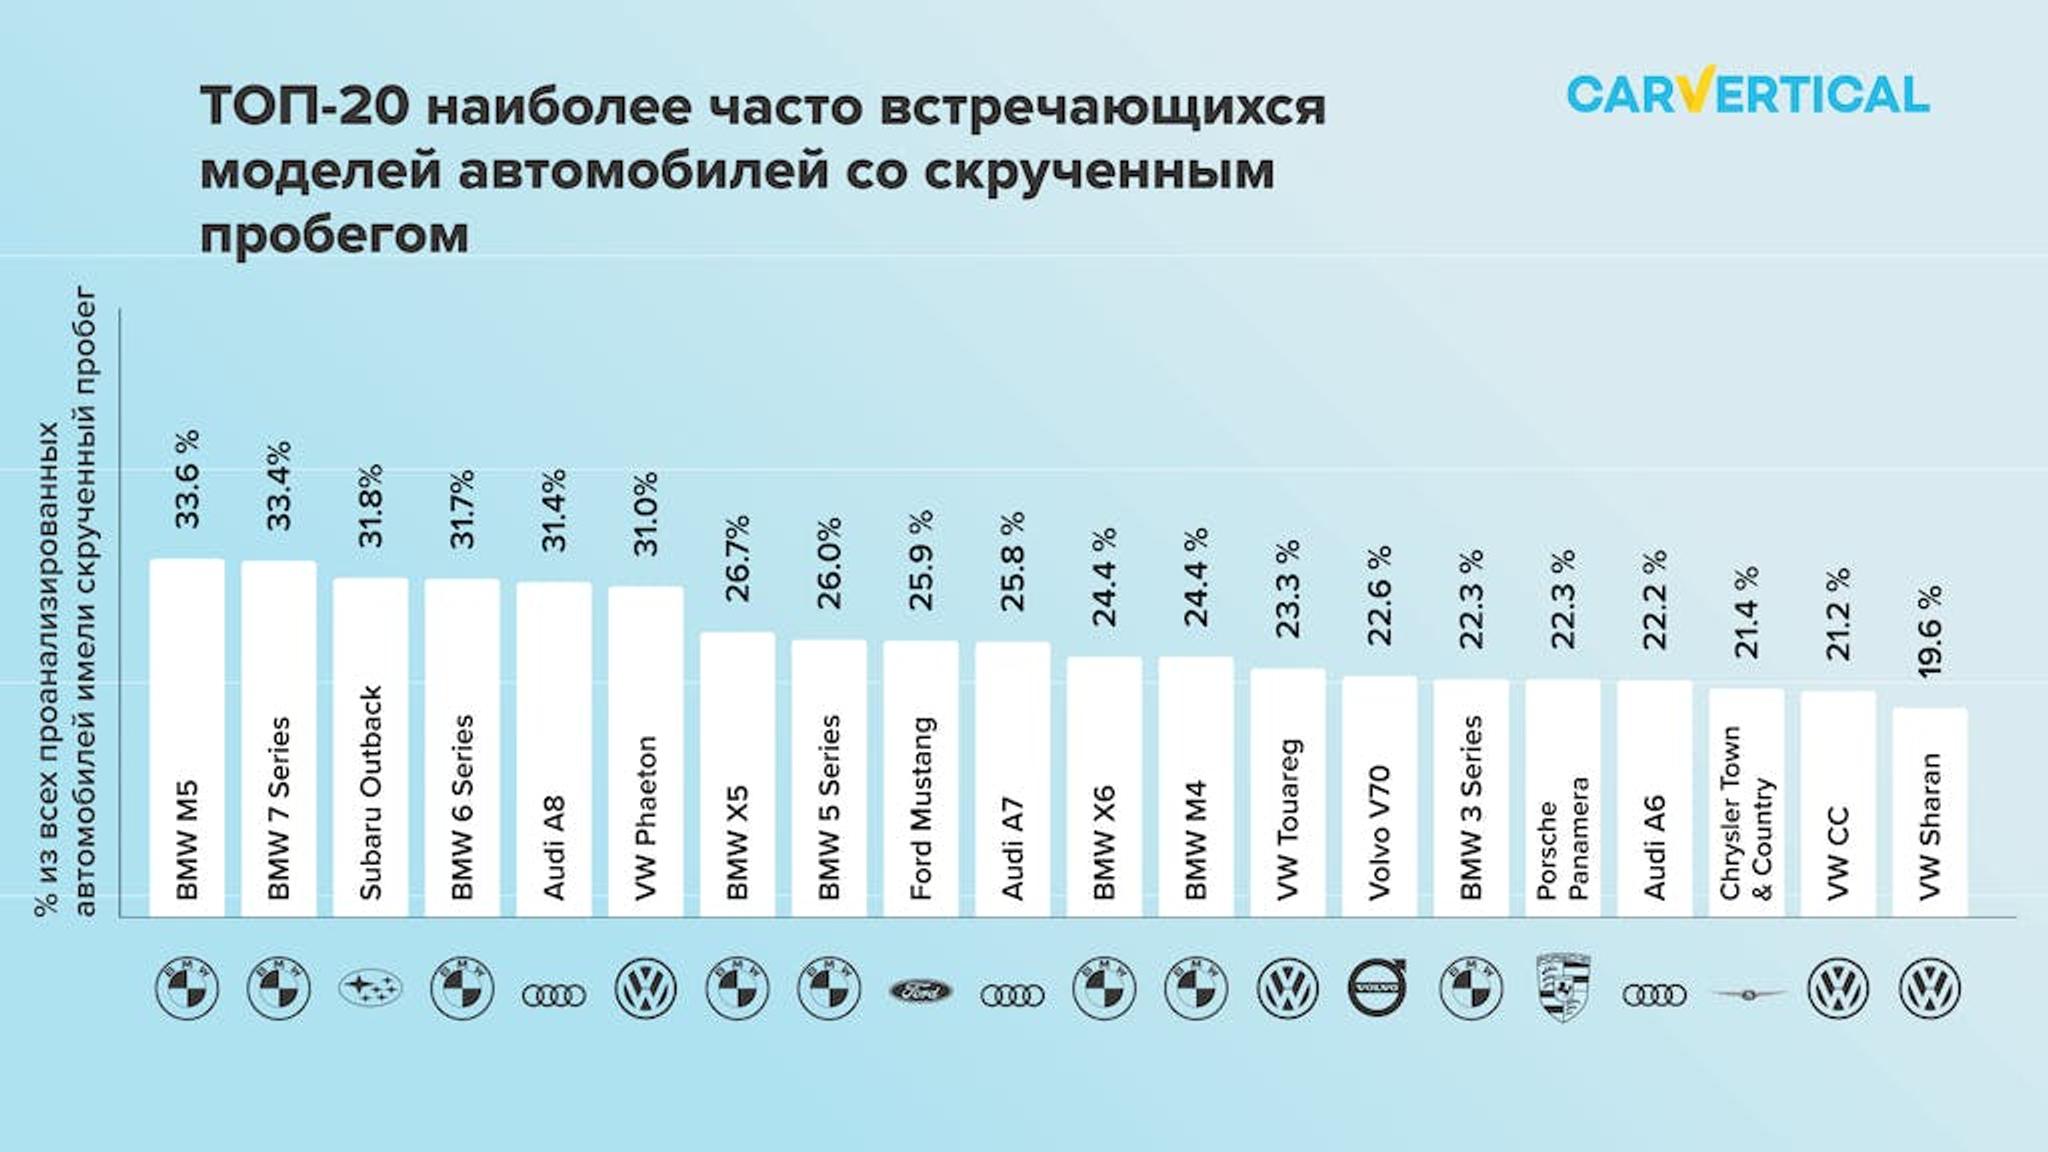 TOP-20 naiboleye chasto vstrechayunshchikhsya modeley avtomobiley so skruchennym probegom